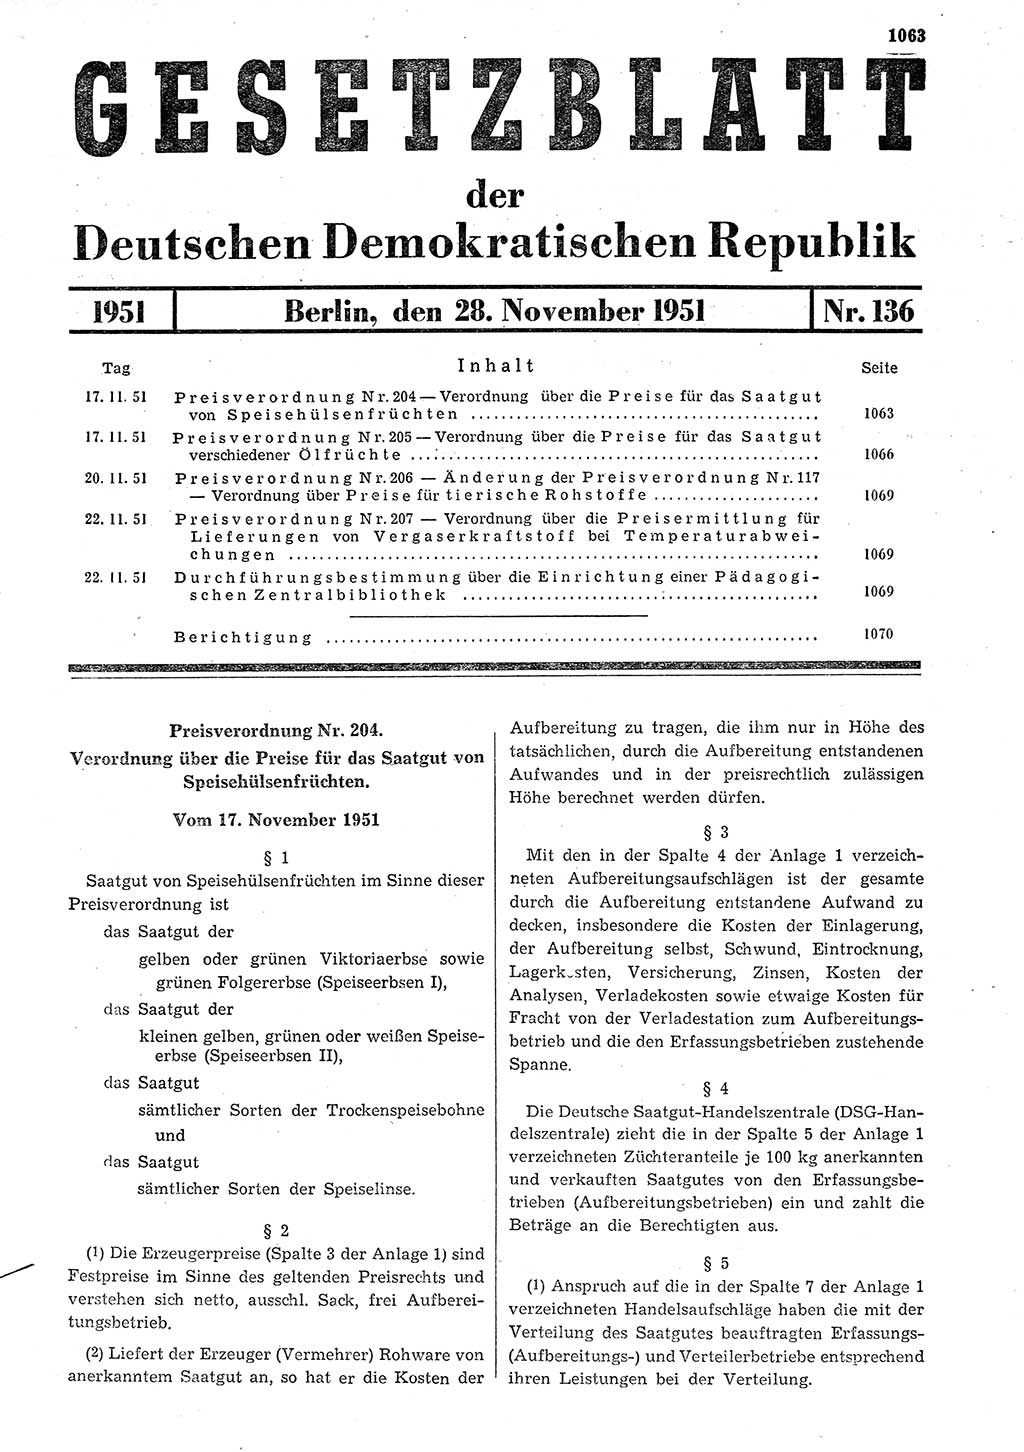 Gesetzblatt (GBl.) der Deutschen Demokratischen Republik (DDR) 1951, Seite 1063 (GBl. DDR 1951, S. 1063)